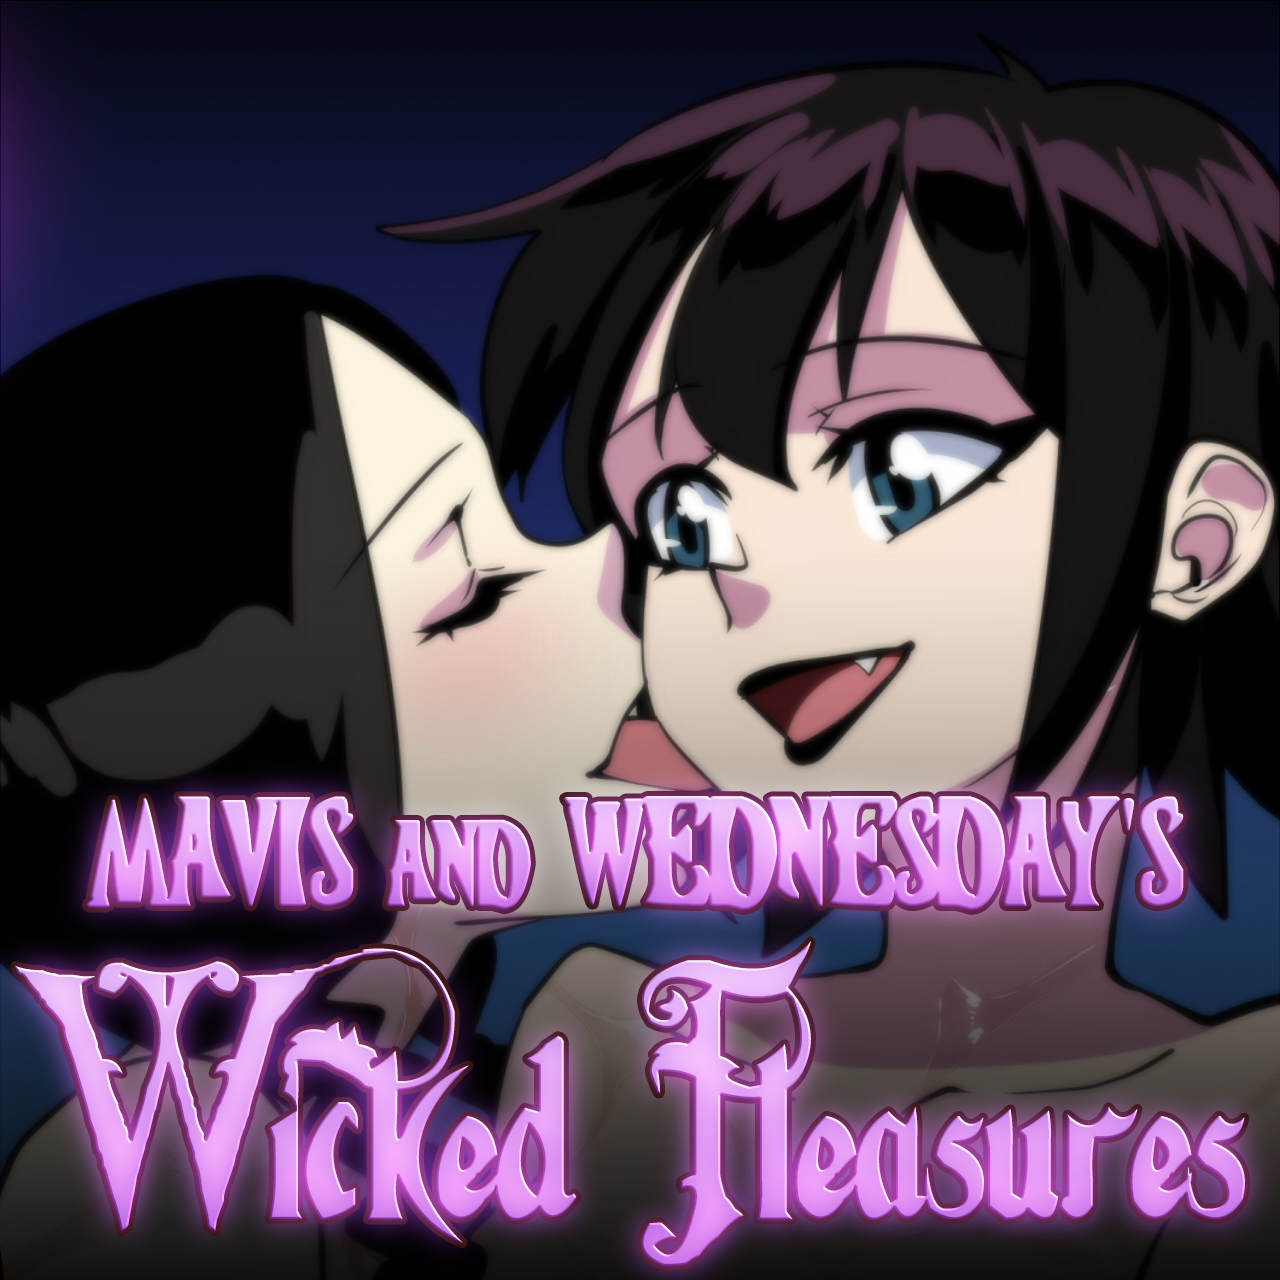 Mavis and Wednesday's Wicked Pleasures